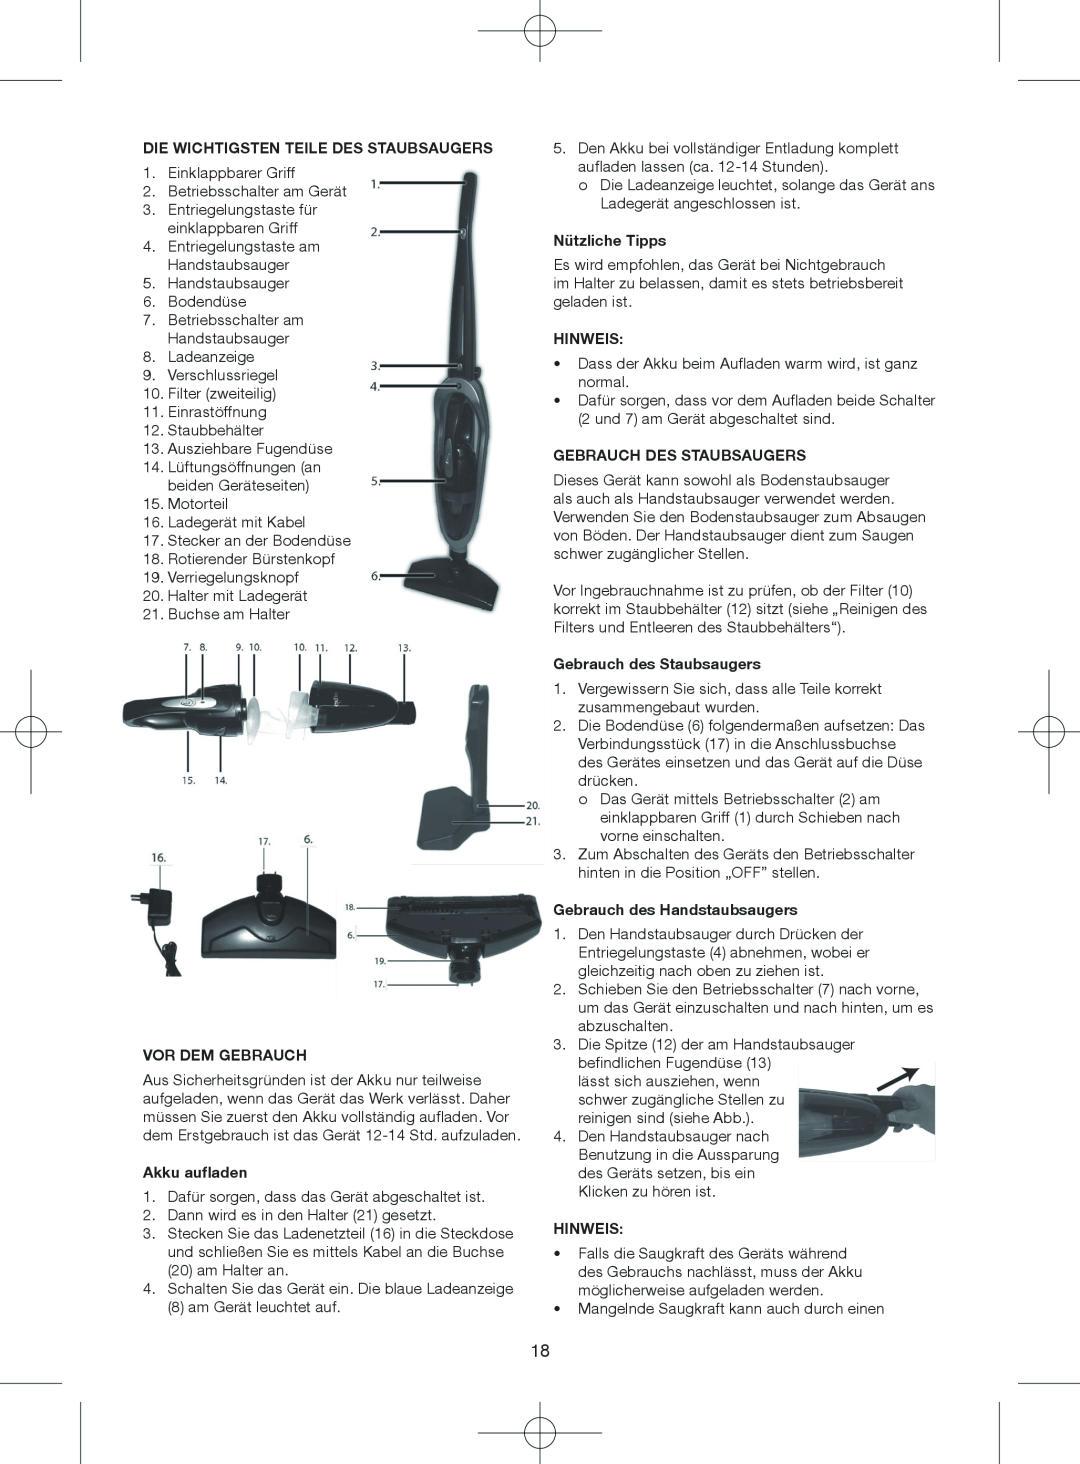 Melissa 640-075 manual Die Wichtigsten Teile Des Staubsaugers, Vor Dem Gebrauch, Akku aufladen, Nützliche Tipps, Hinweis 